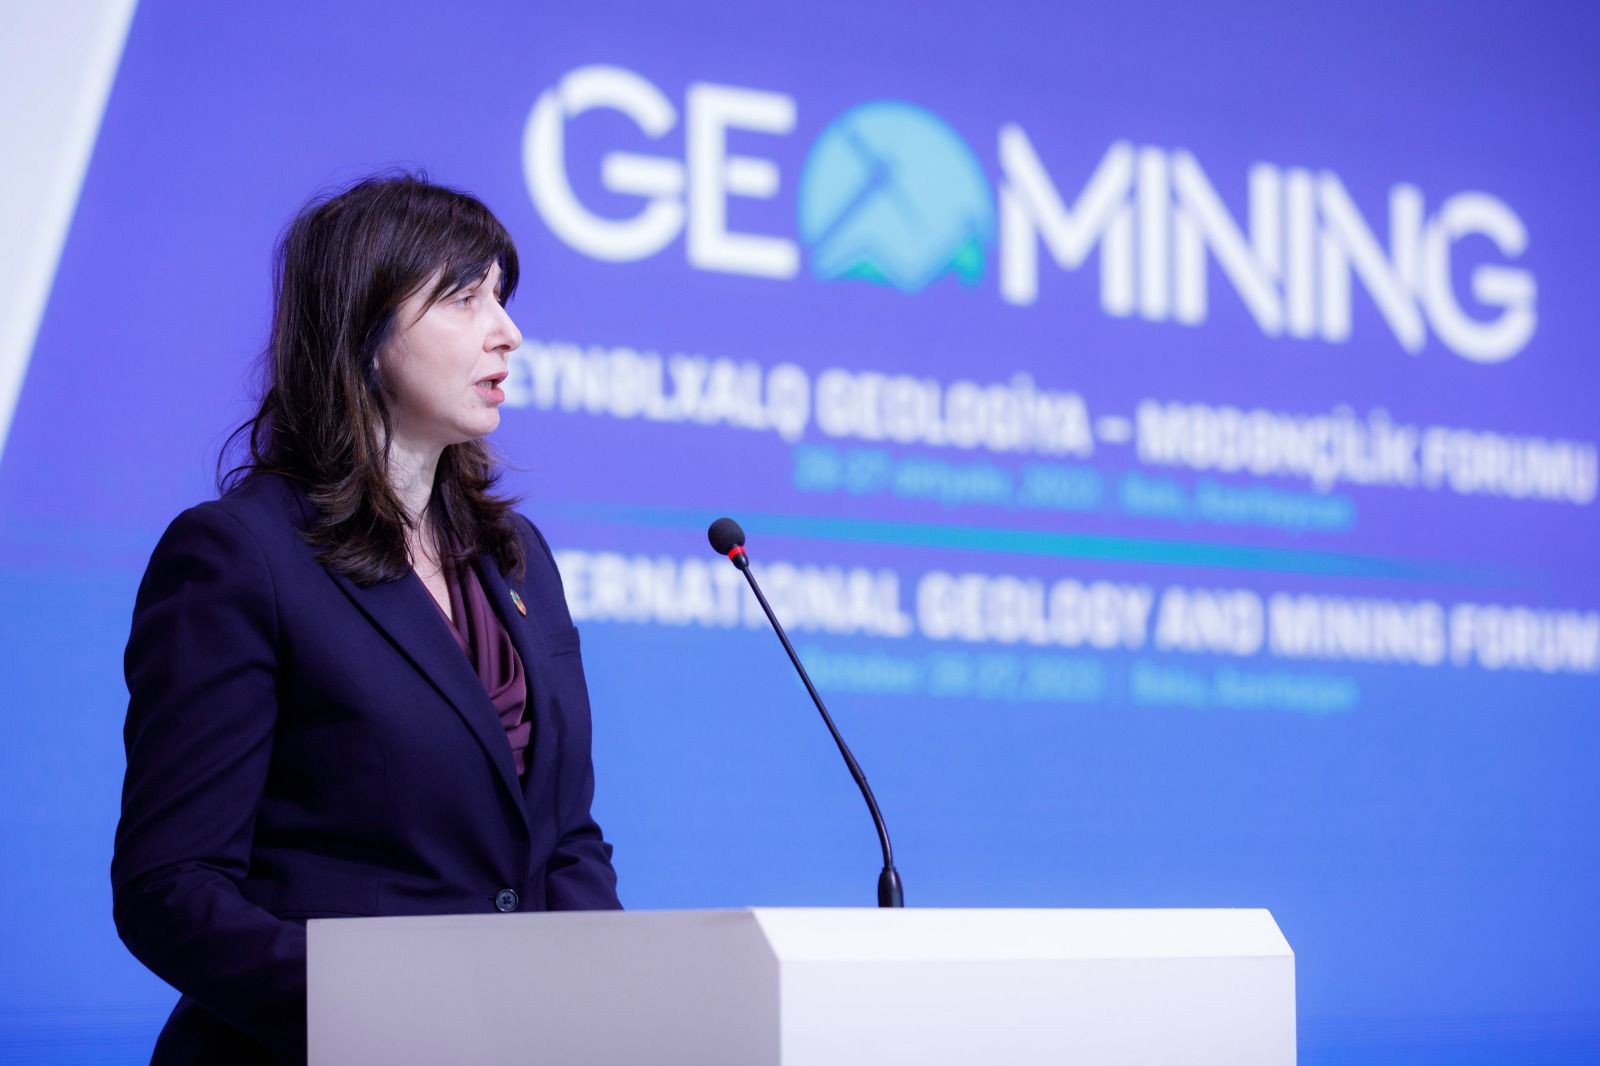 Beynəlxalq Geologiya-Mədənçilik Forumunun rəsmi açılış mərasimi keçirilib-